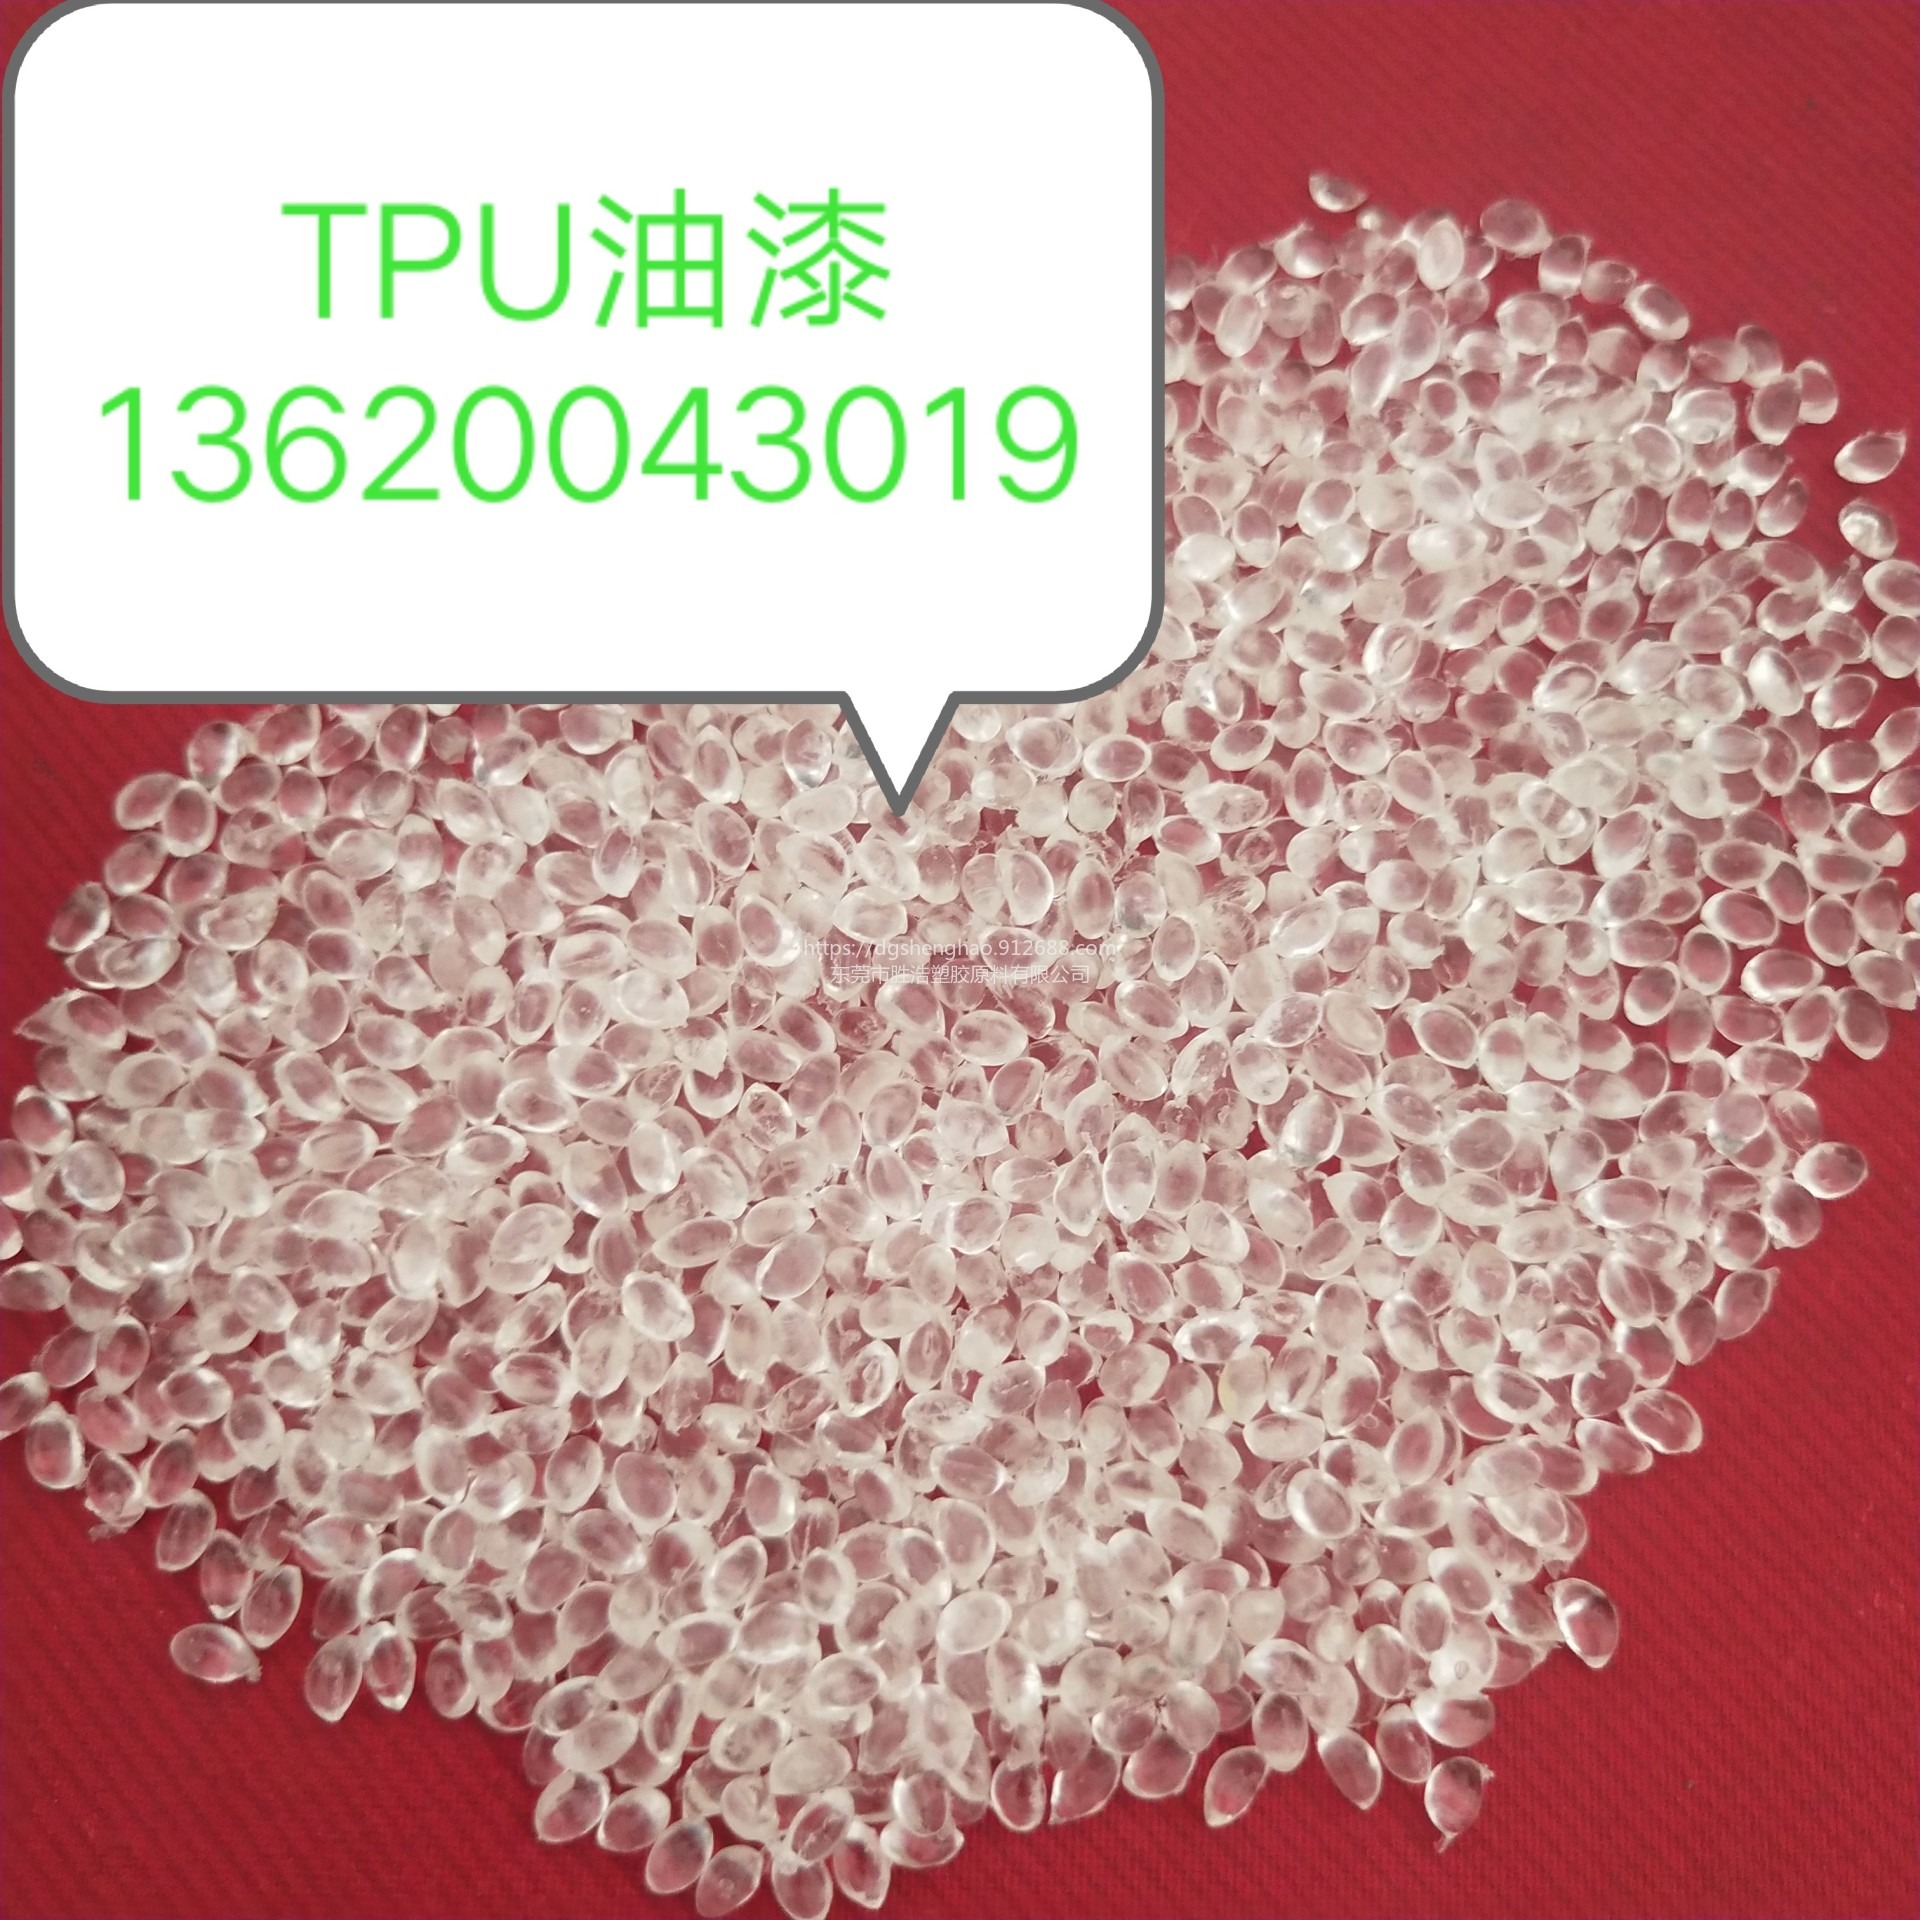 油墨TPU  高透明油墨  高光泽  溶剂型TPU   可溶TPU  醇类可溶TPU 酯类可溶TPU